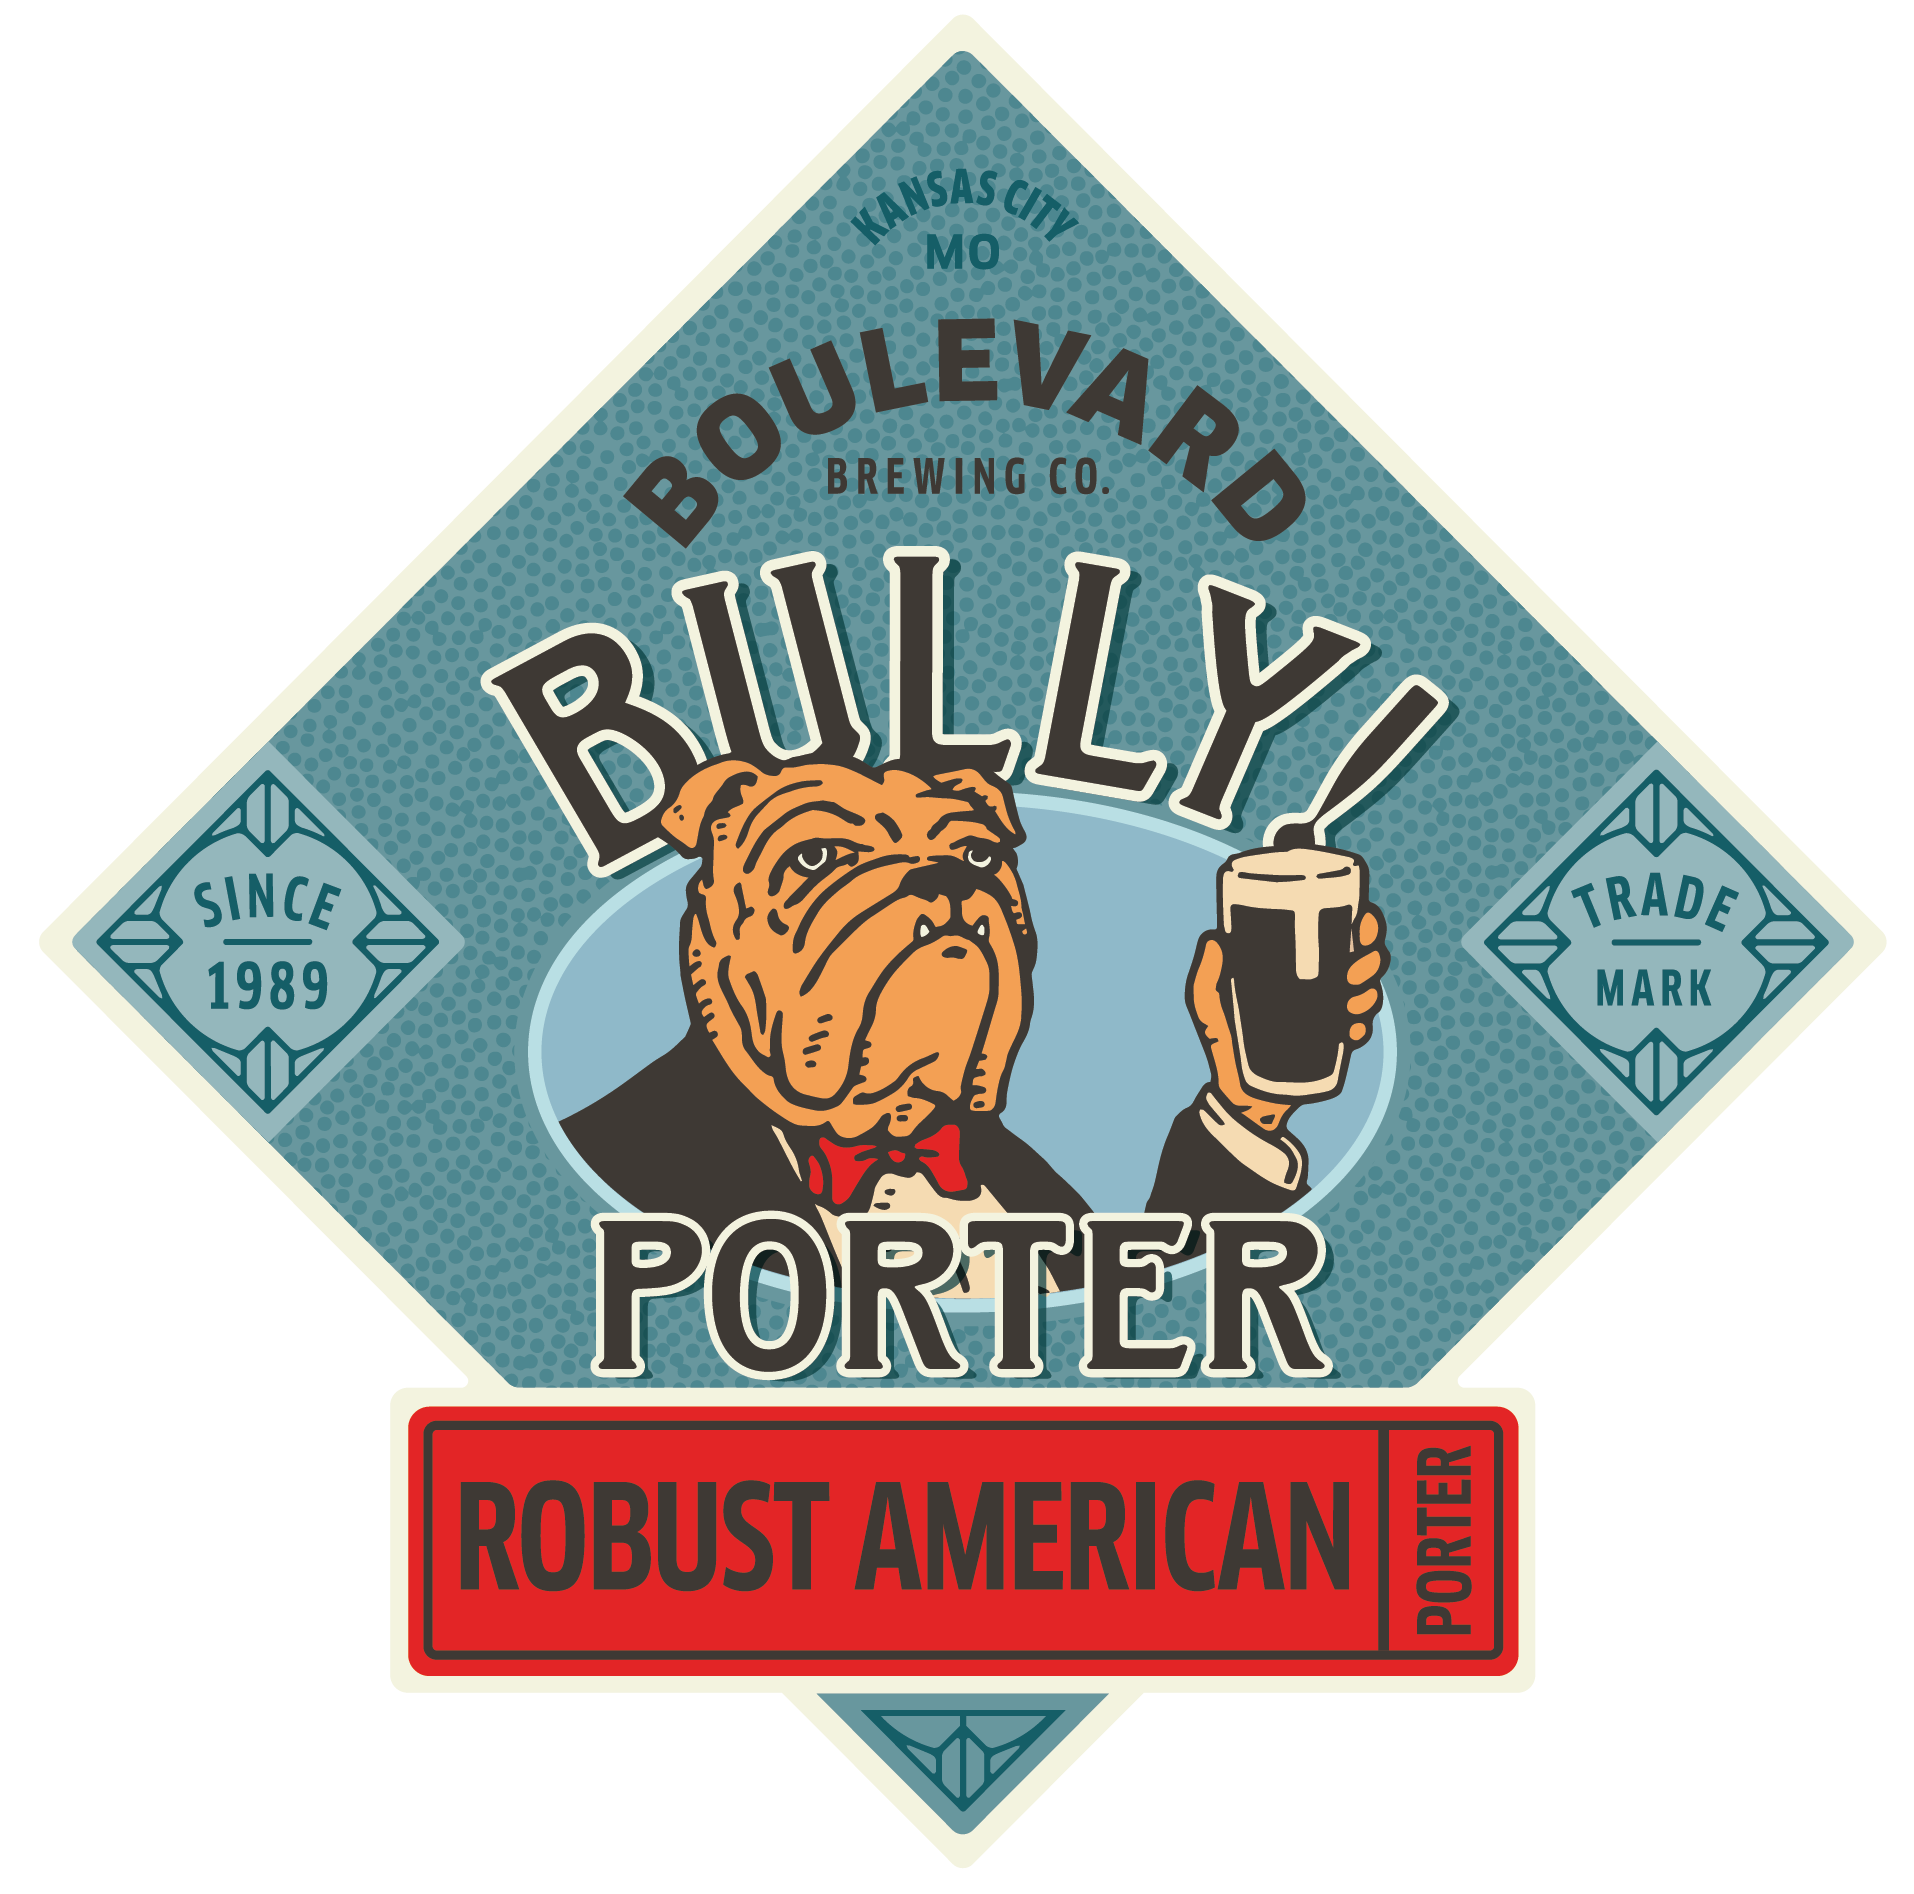 Хулиган пиво. Логотипы пивных компаний. Porter пиво логотип. Пиво Портер этикетка. Логотипы американских пивных компаний.